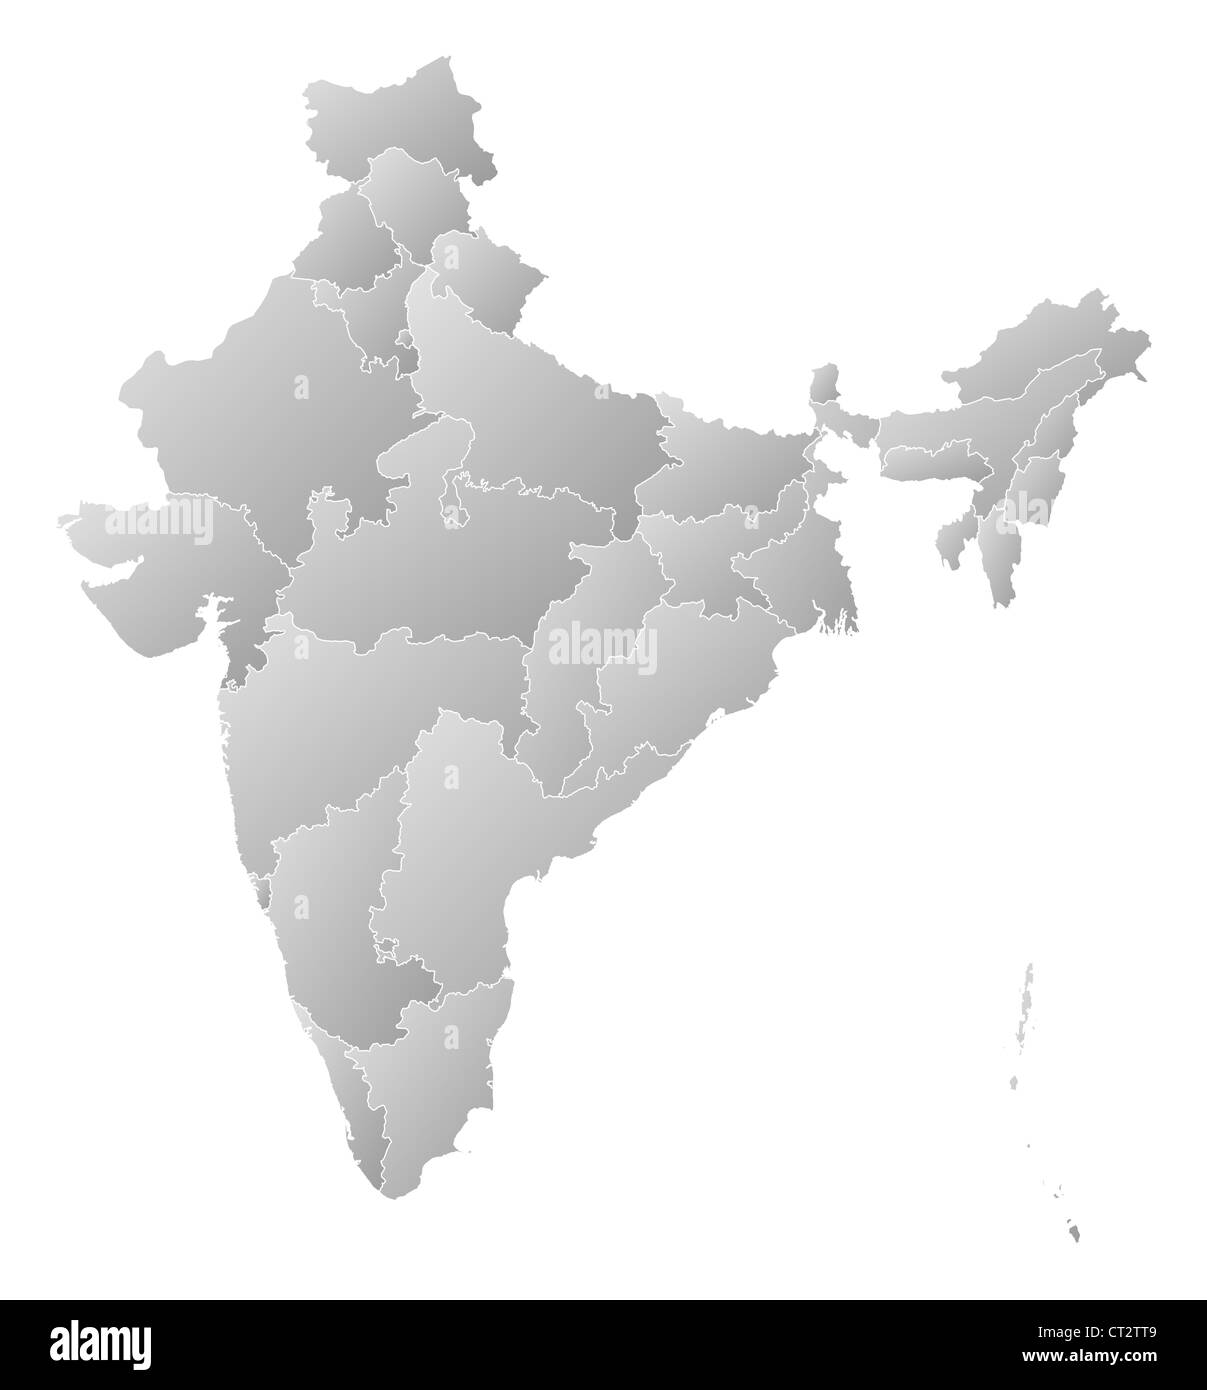 Mapa Político De La India Con Los Diversos Estados Fotografía De Stock